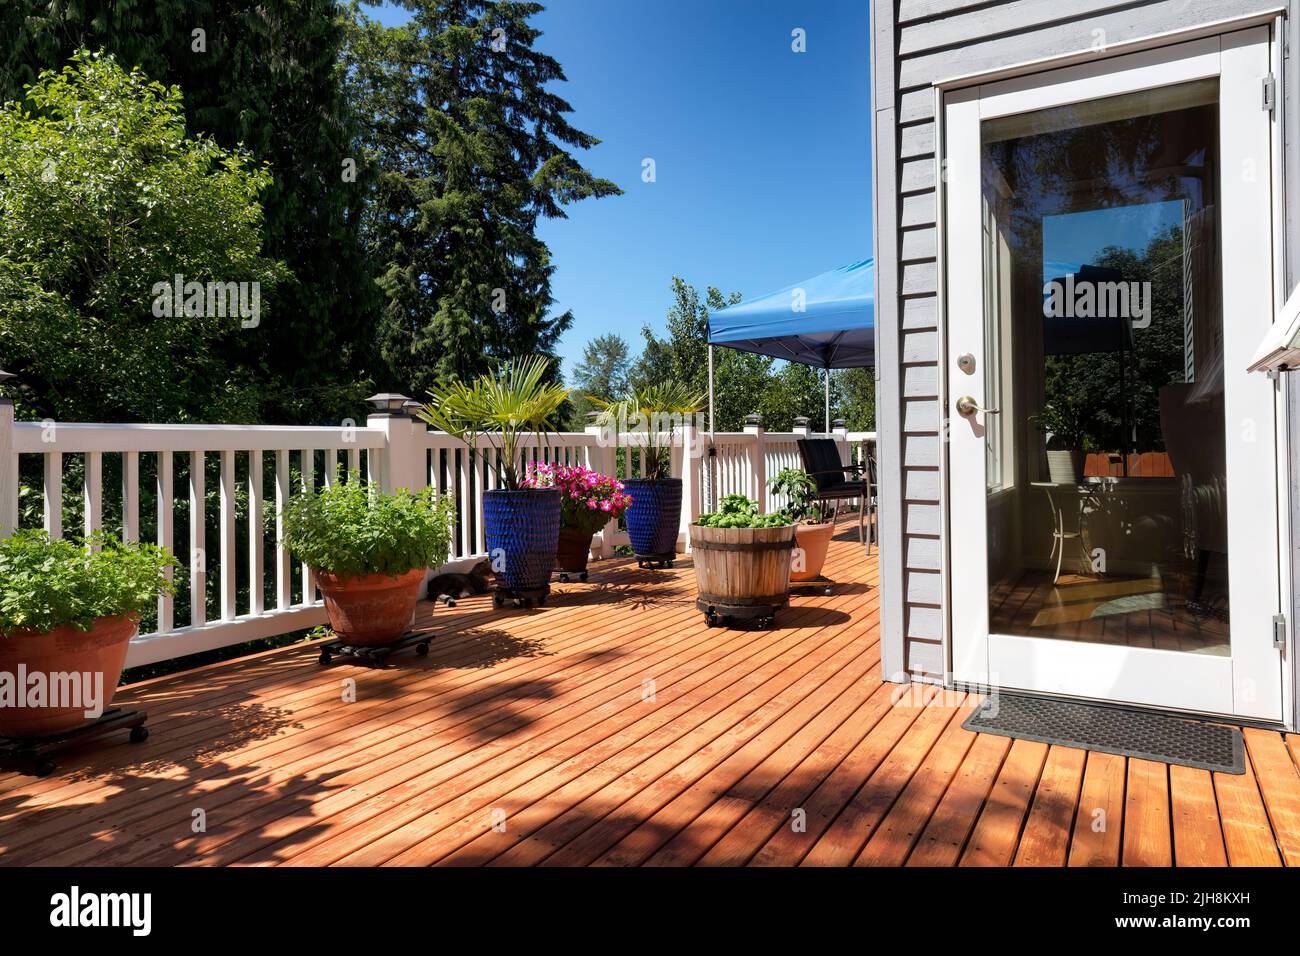 Casa patio trasero con jardín y plantas en macetas durante la temporada de crecimiento de verano Foto de stock